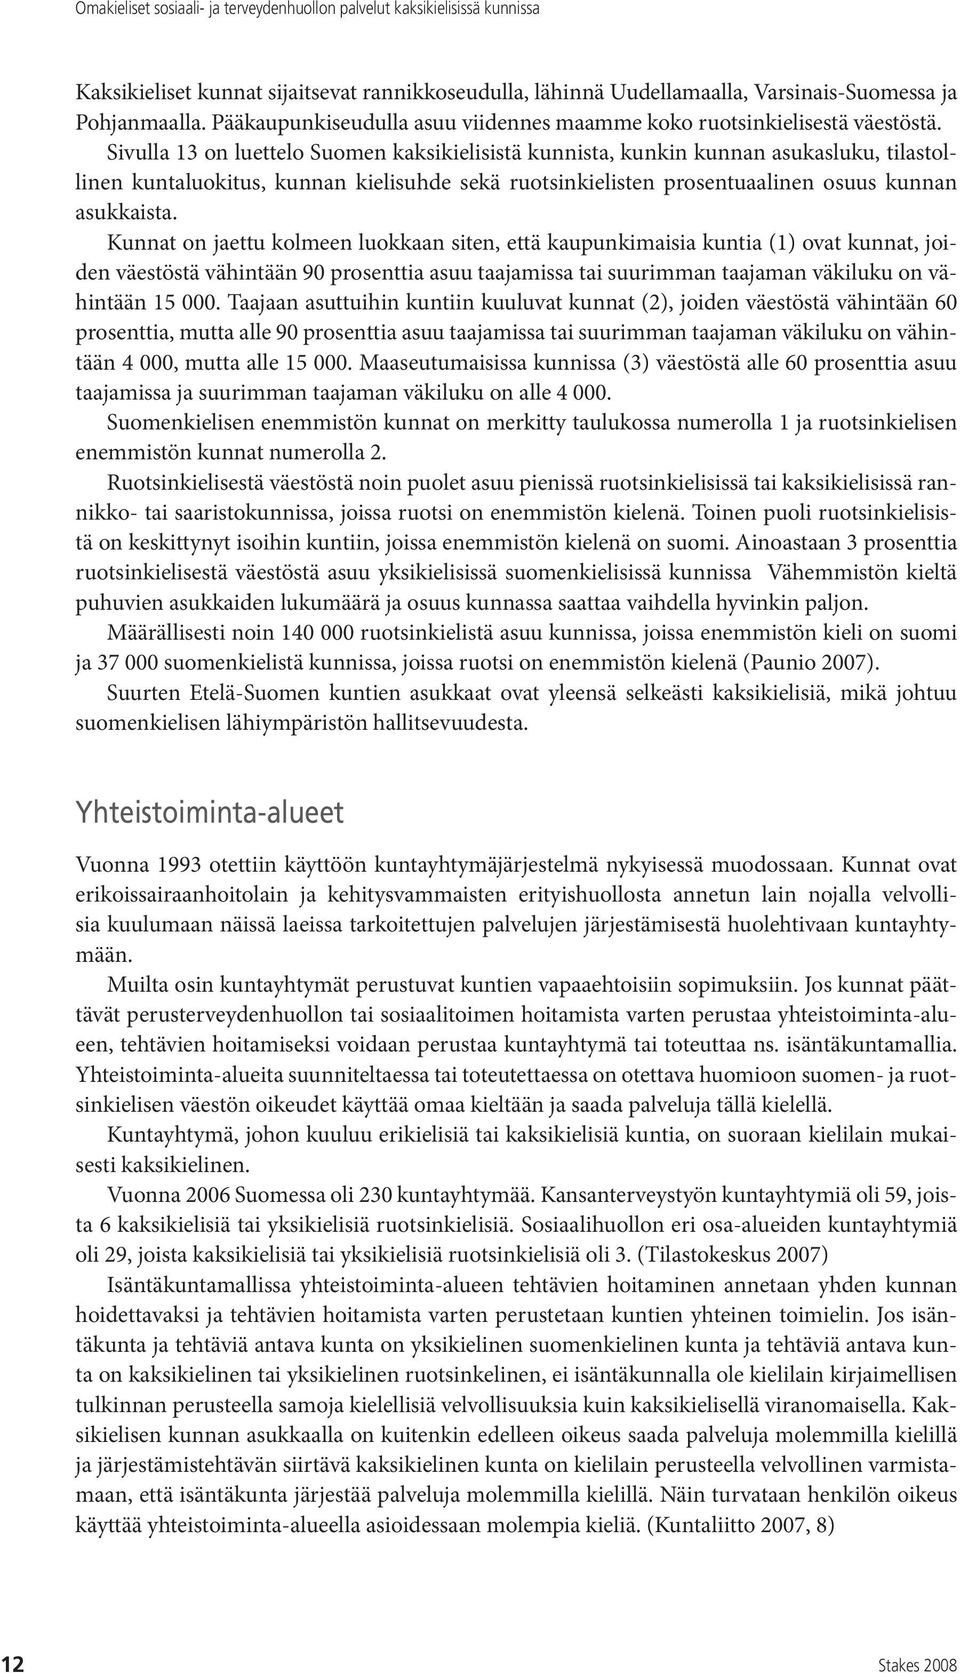 Sivulla 13 on luettelo Suomen kaksikielisistä kunnista, kunkin kunnan asukasluku, tilastollinen kuntaluokitus, kunnan kielisuhde sekä ruotsinkielisten prosentuaalinen osuus kunnan asukkaista.